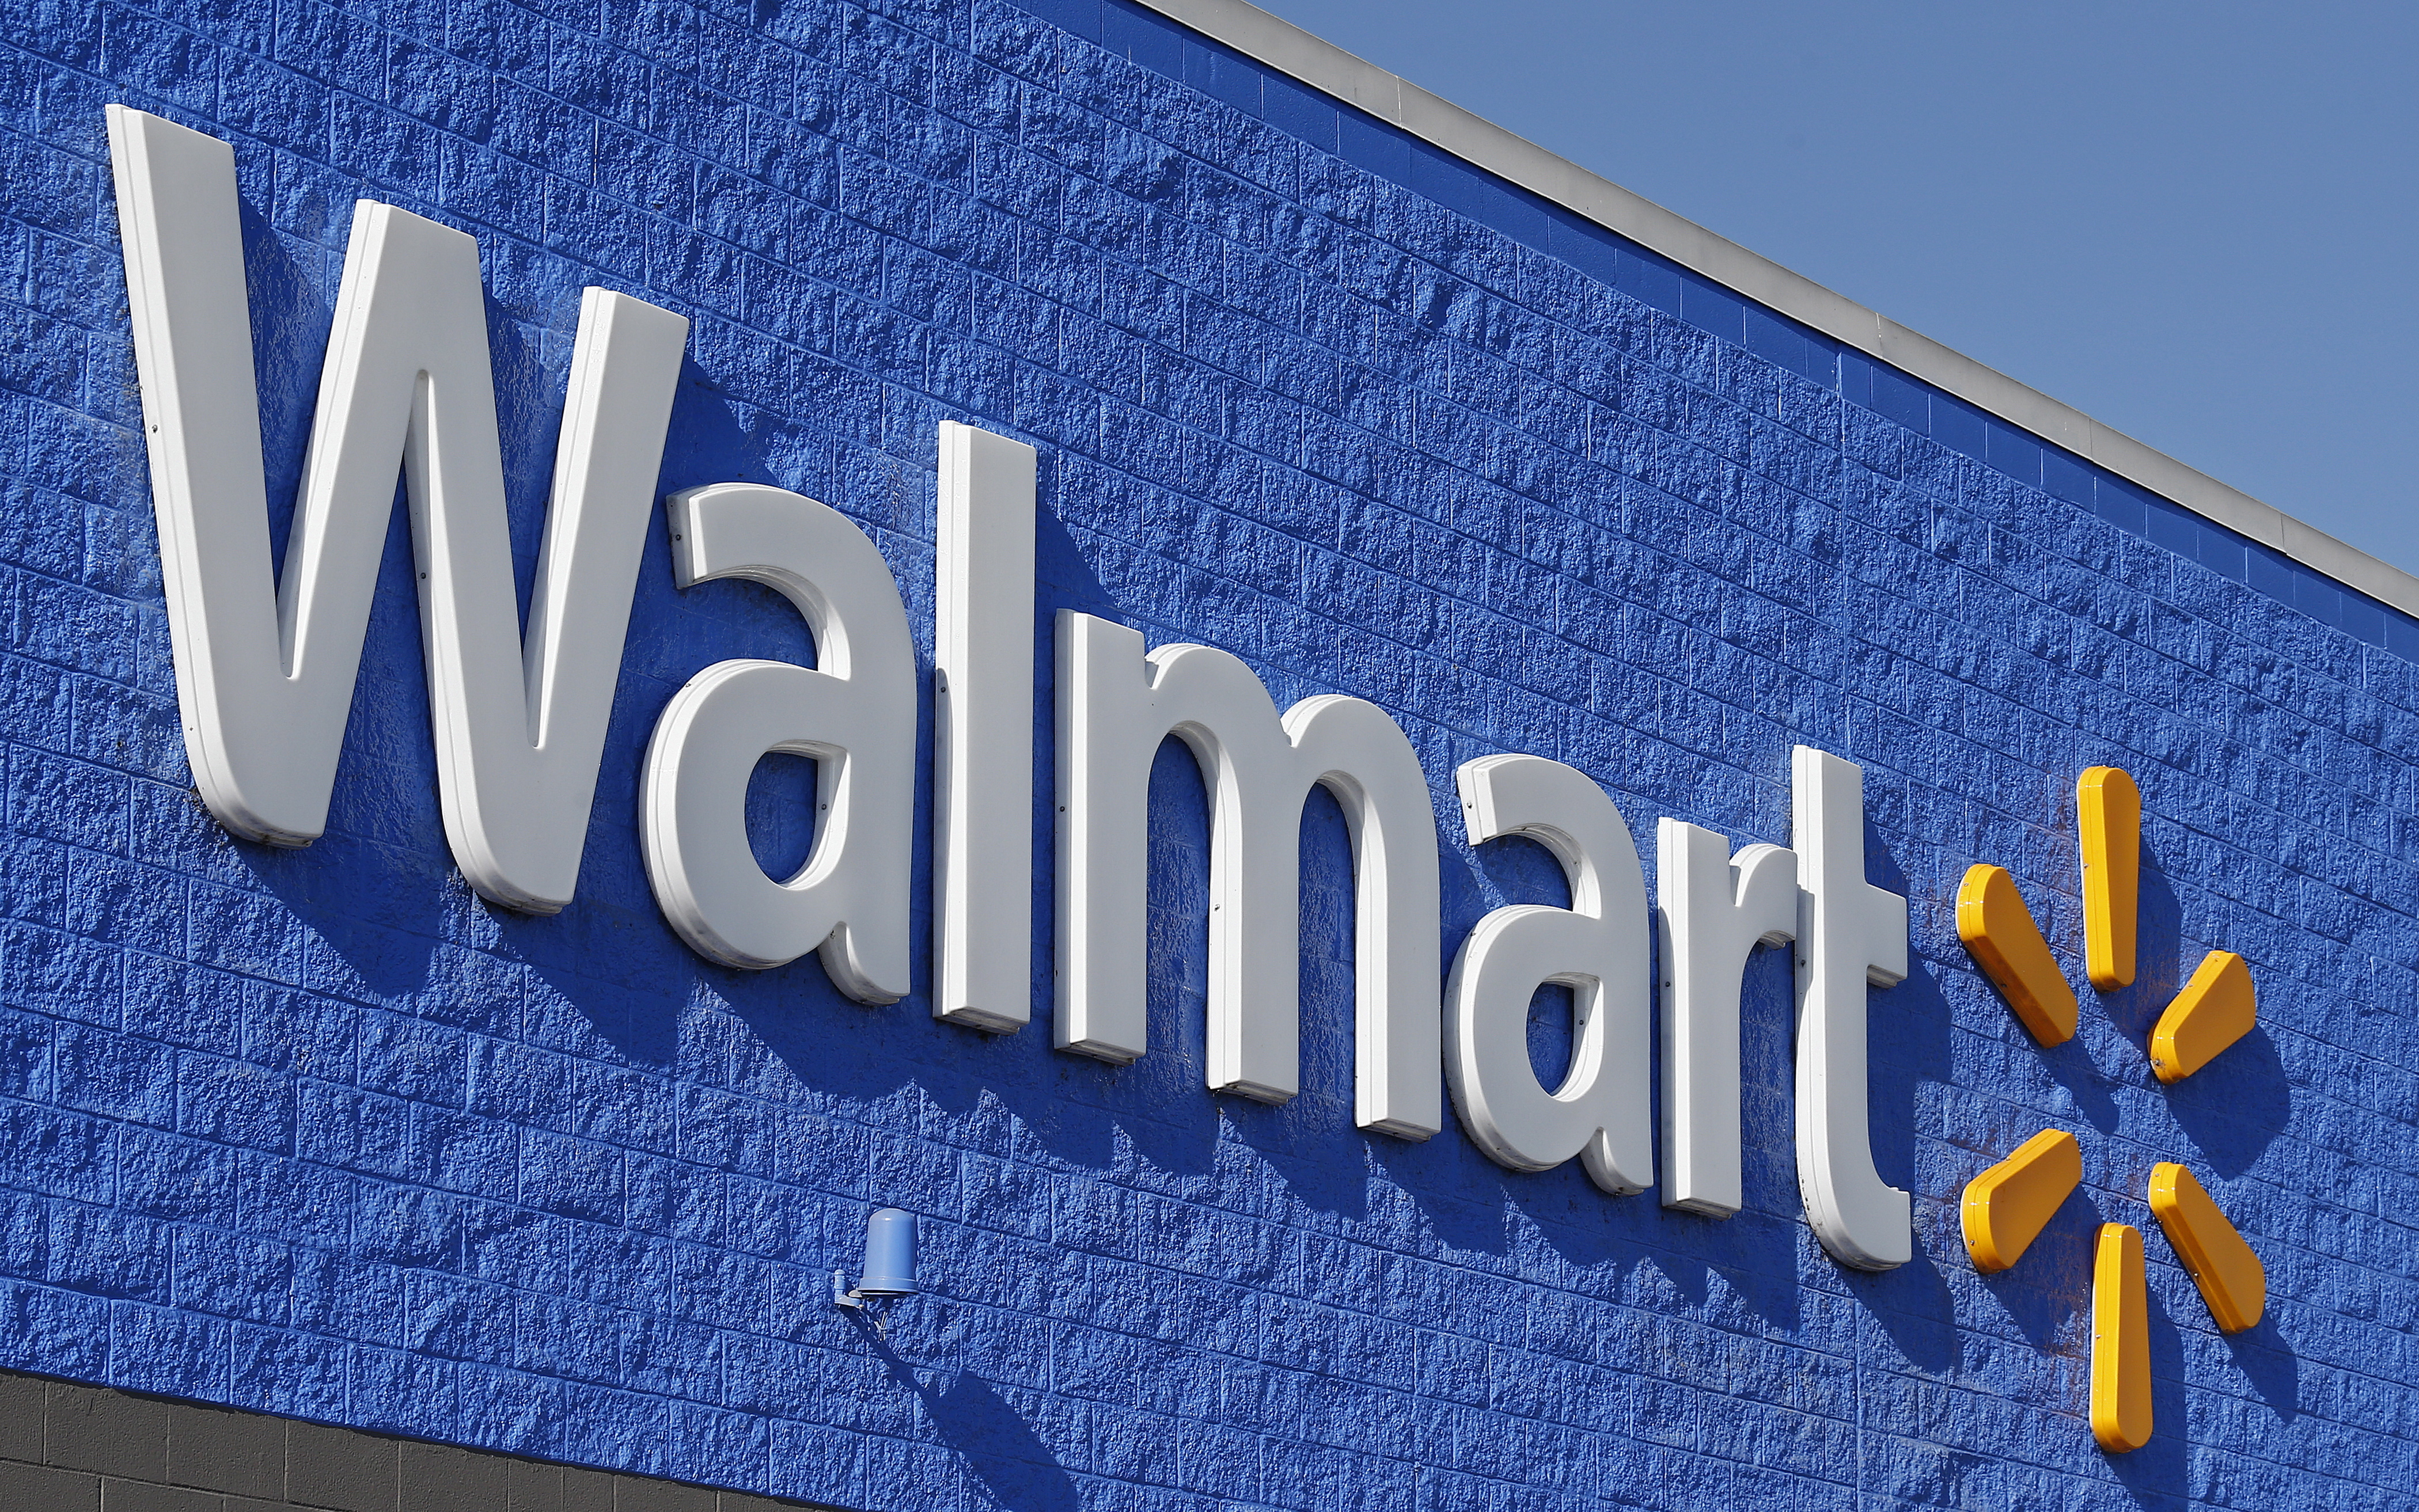 La norteamericana Walmart es una de las firmas extranjeras que decidió vender sus activos y retirarse de la Argentina